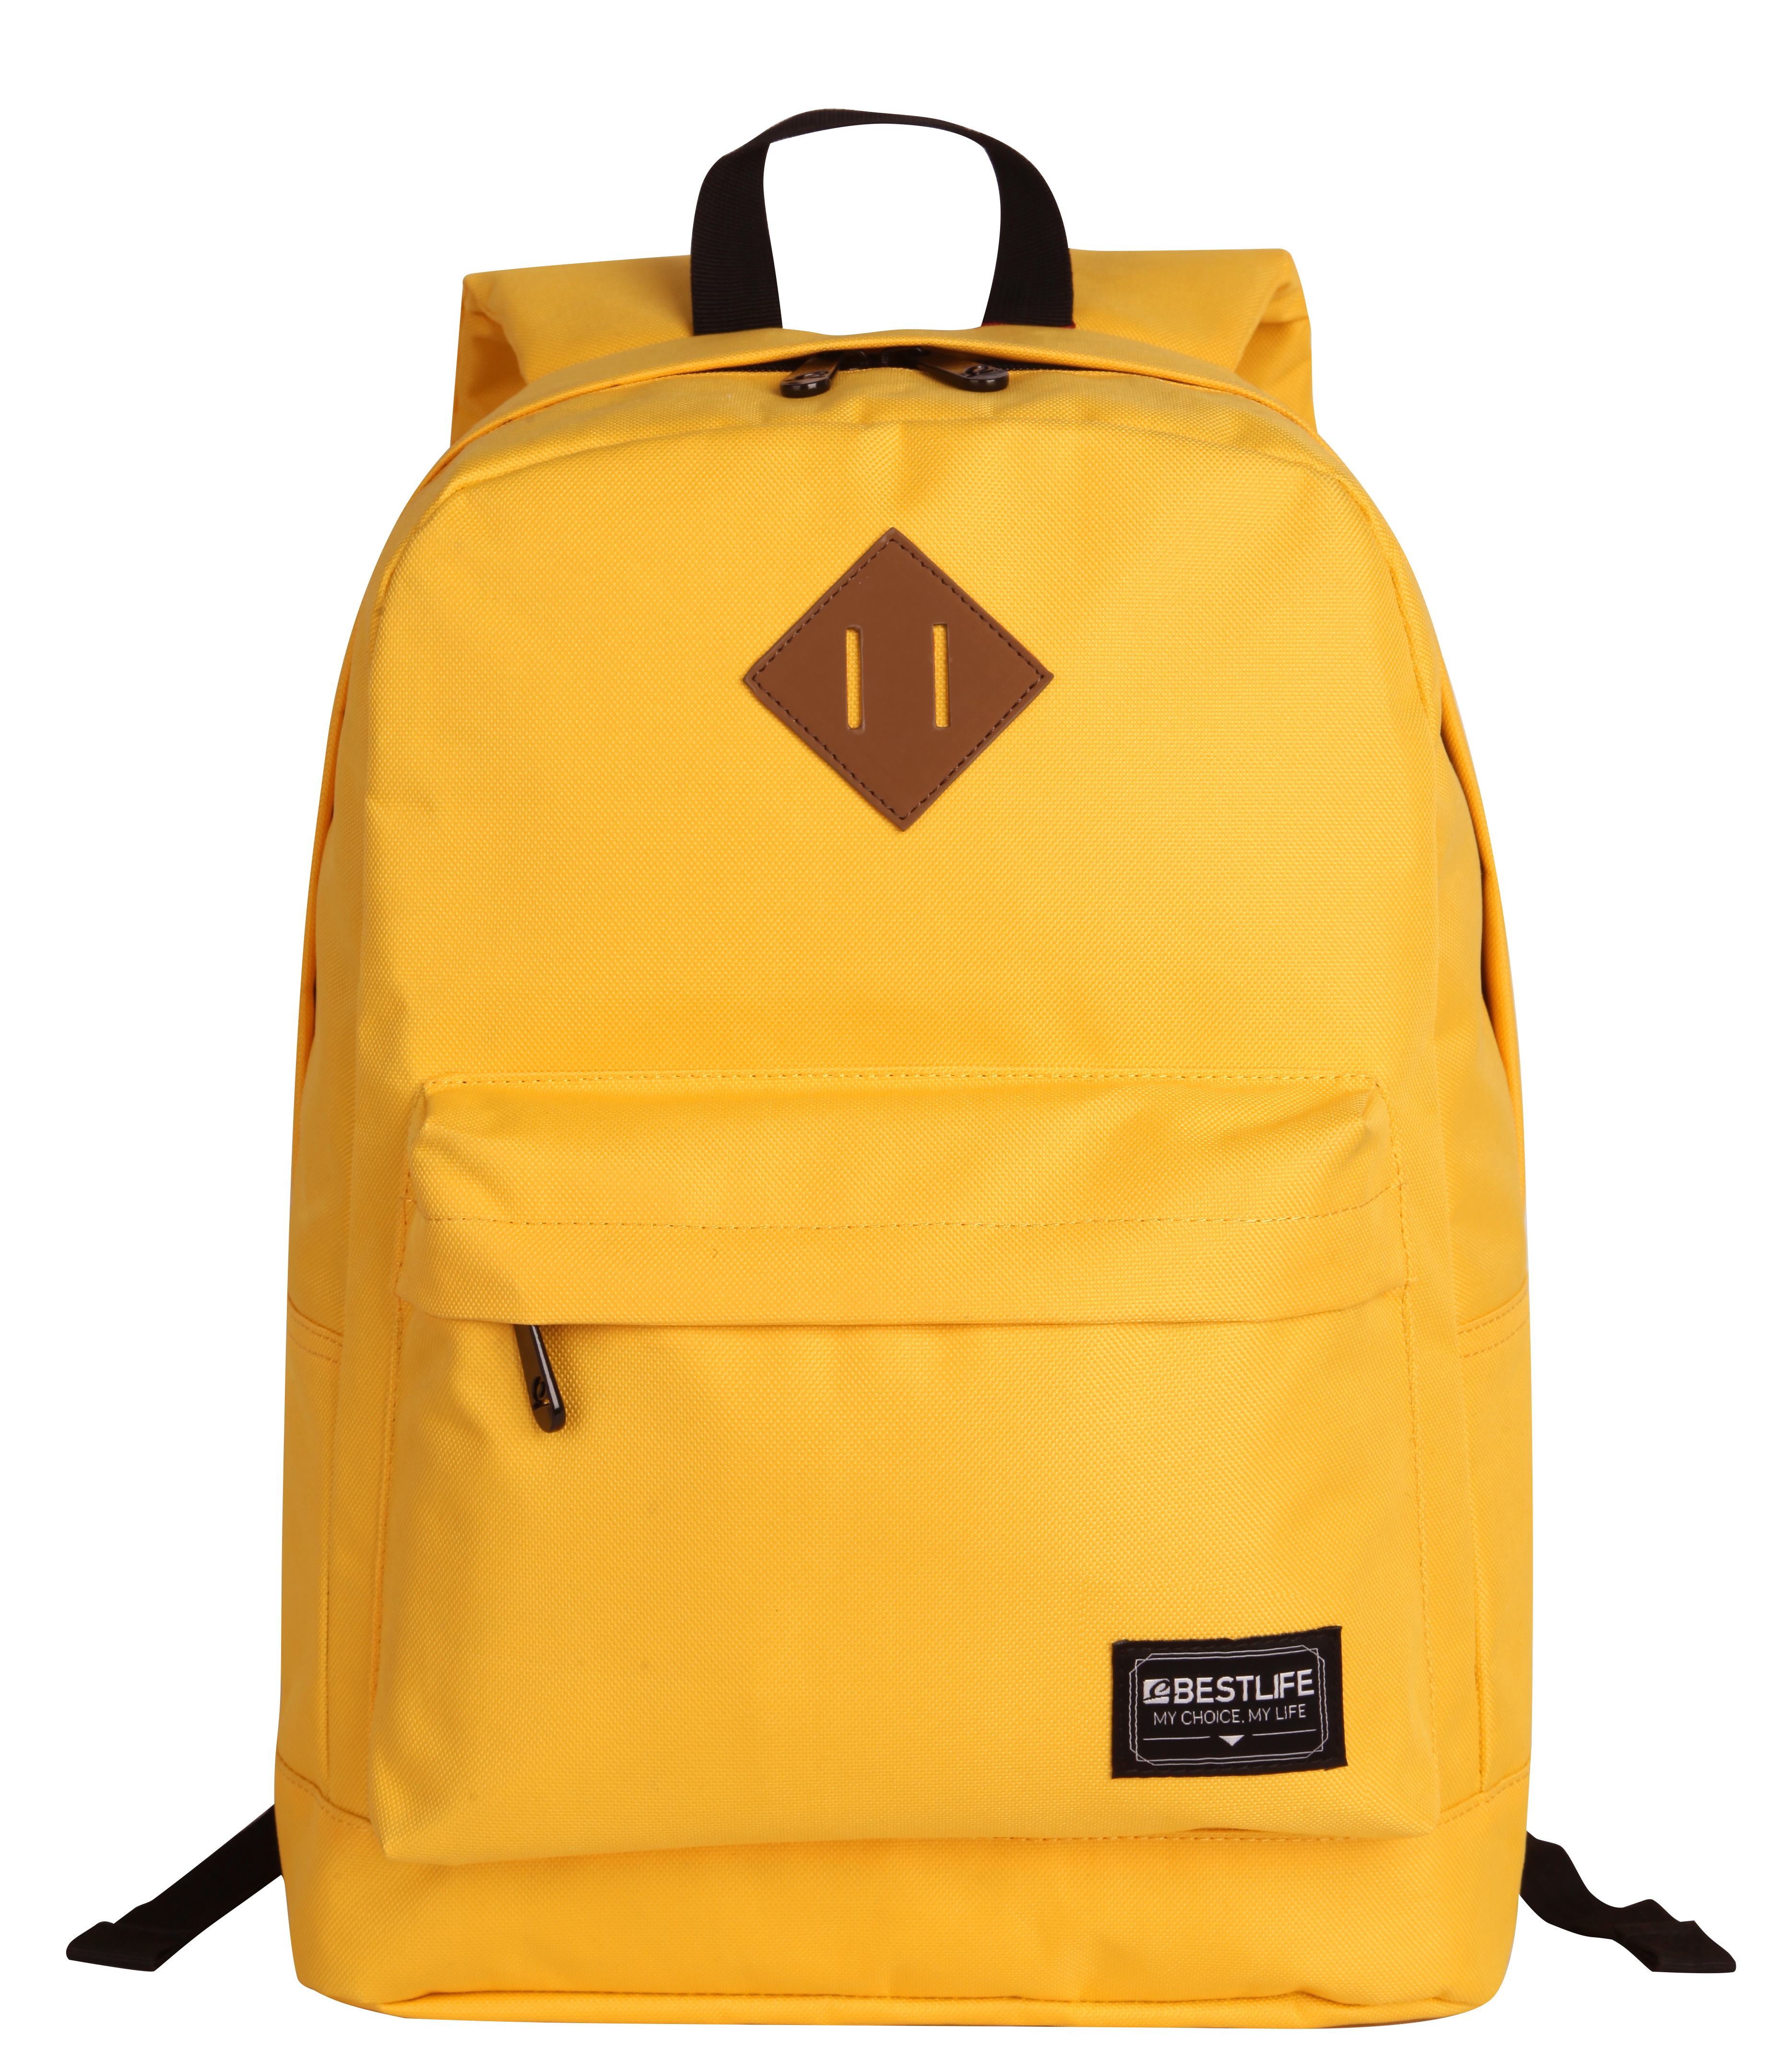 Рюкзак желтый